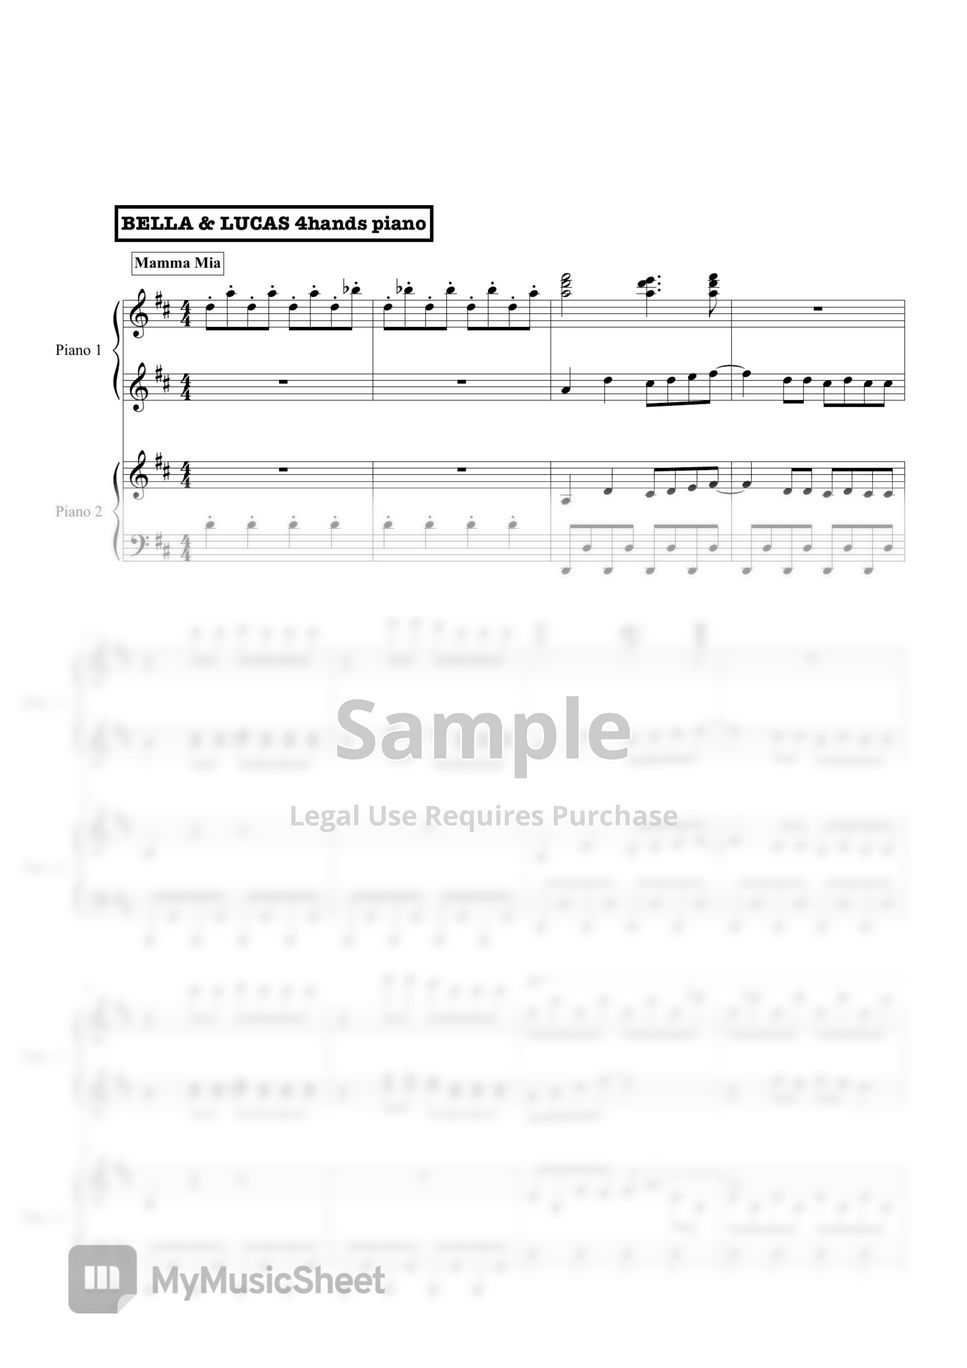 Mamma Mia - Medley (4Hands Piano) by Bella&Lucas